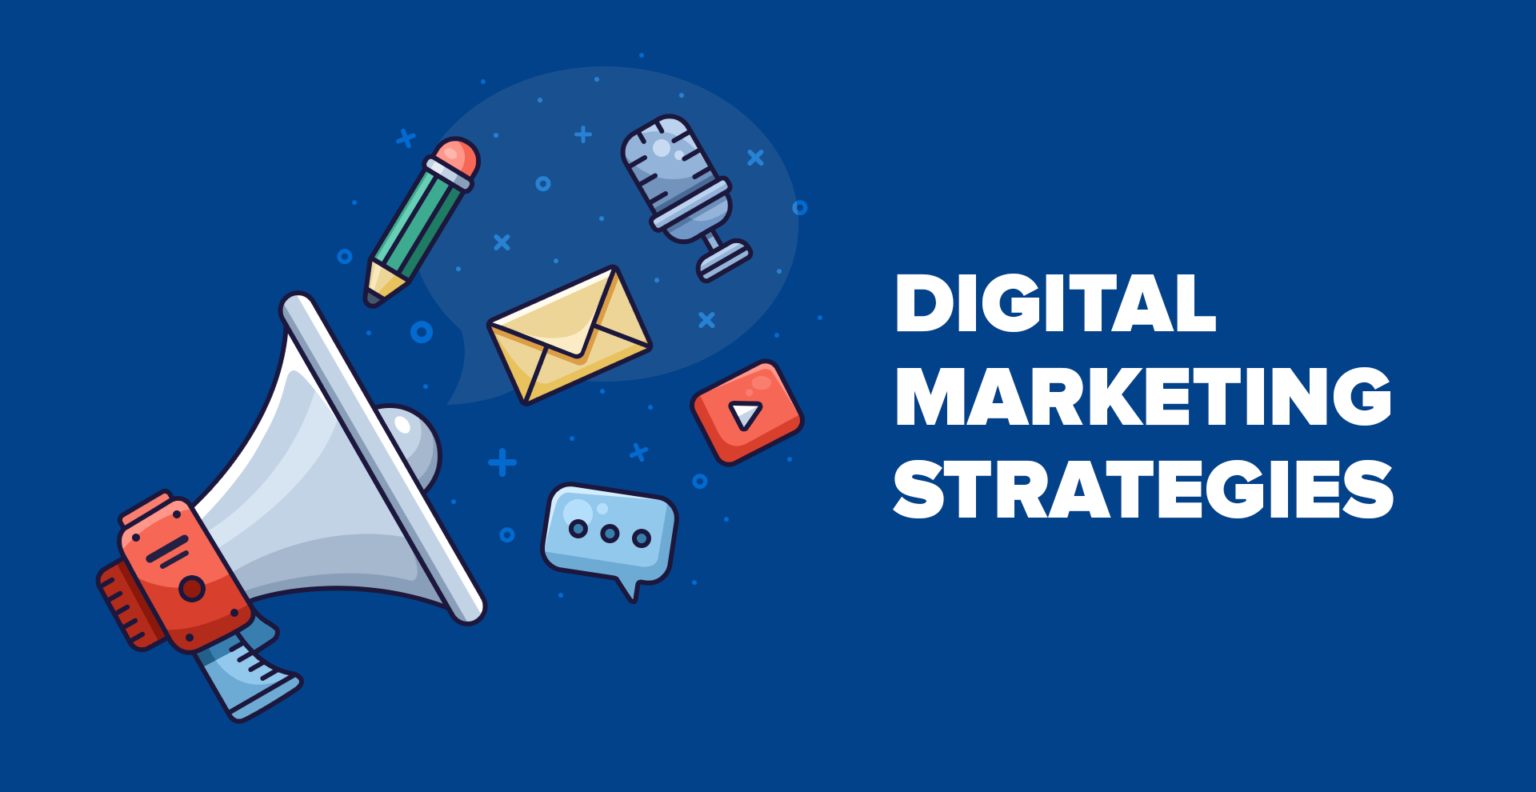 fb-digital-marketing-strategies-1-1536x792